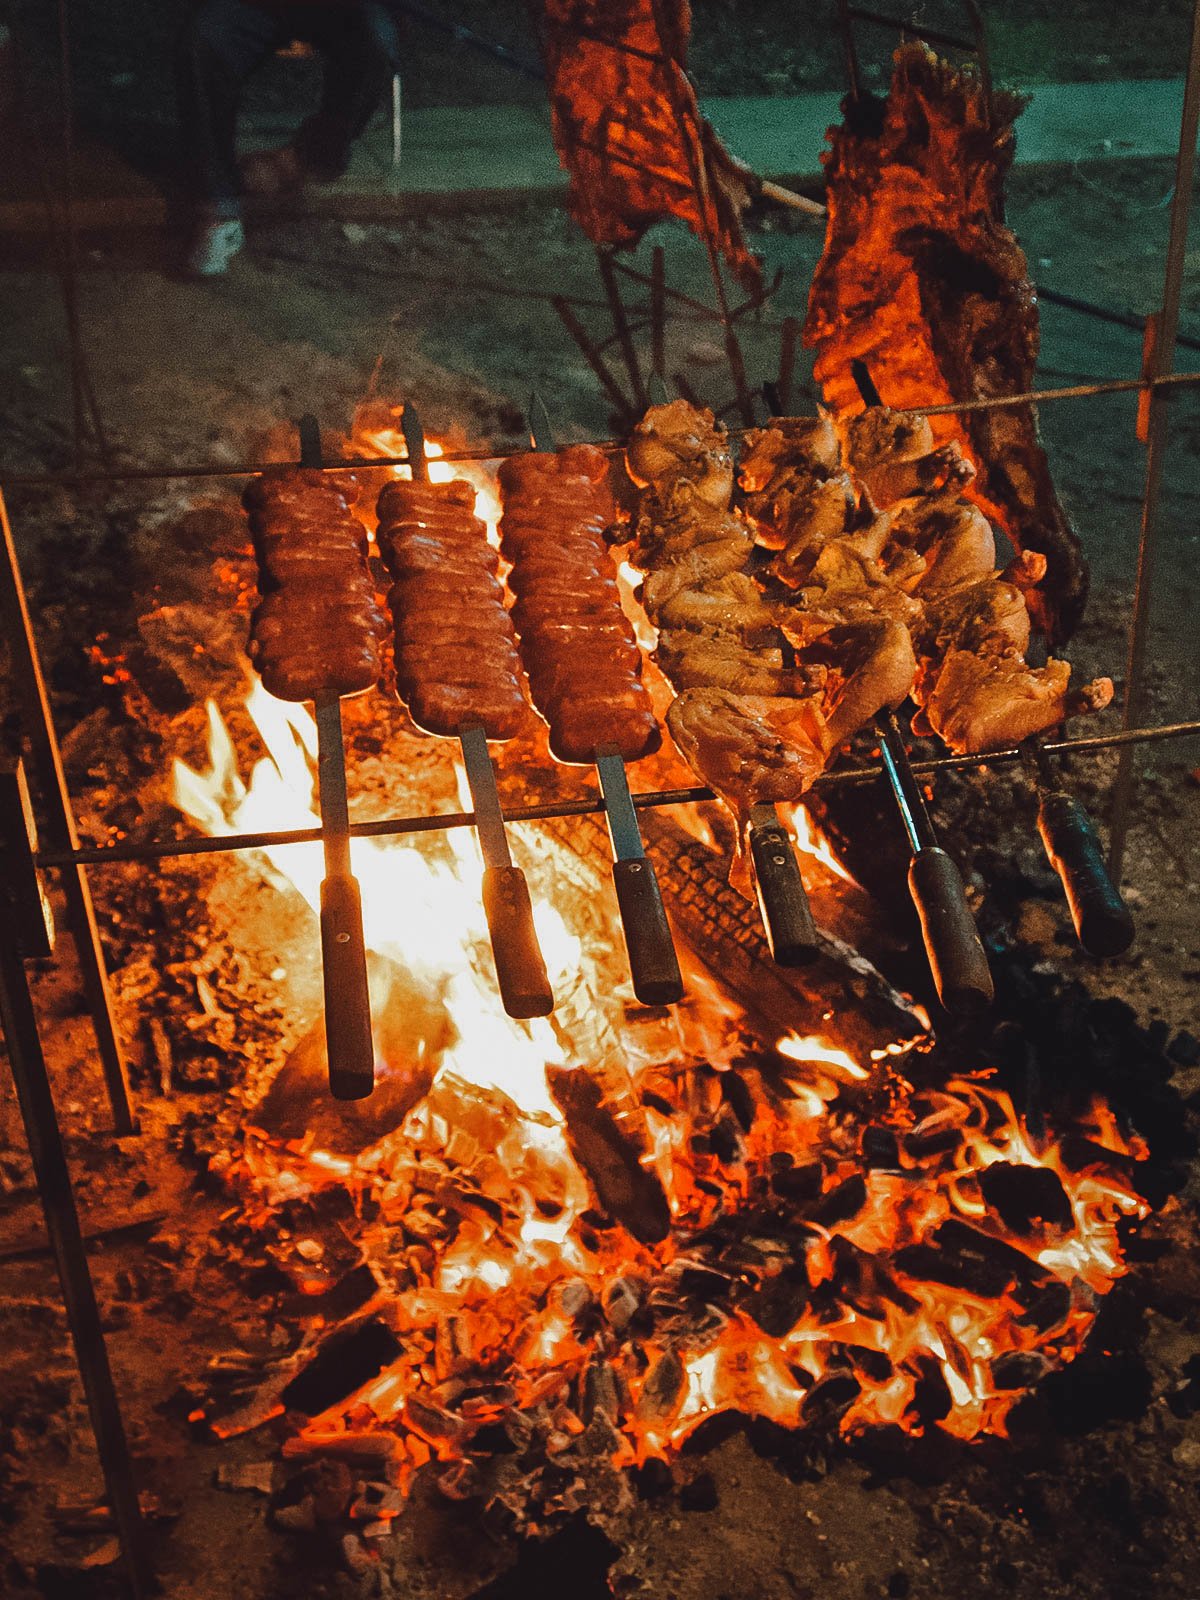  Churrasco-Fleisch Grillen über dem Feuer, eine der köstlichsten brasilianischen Traditionen